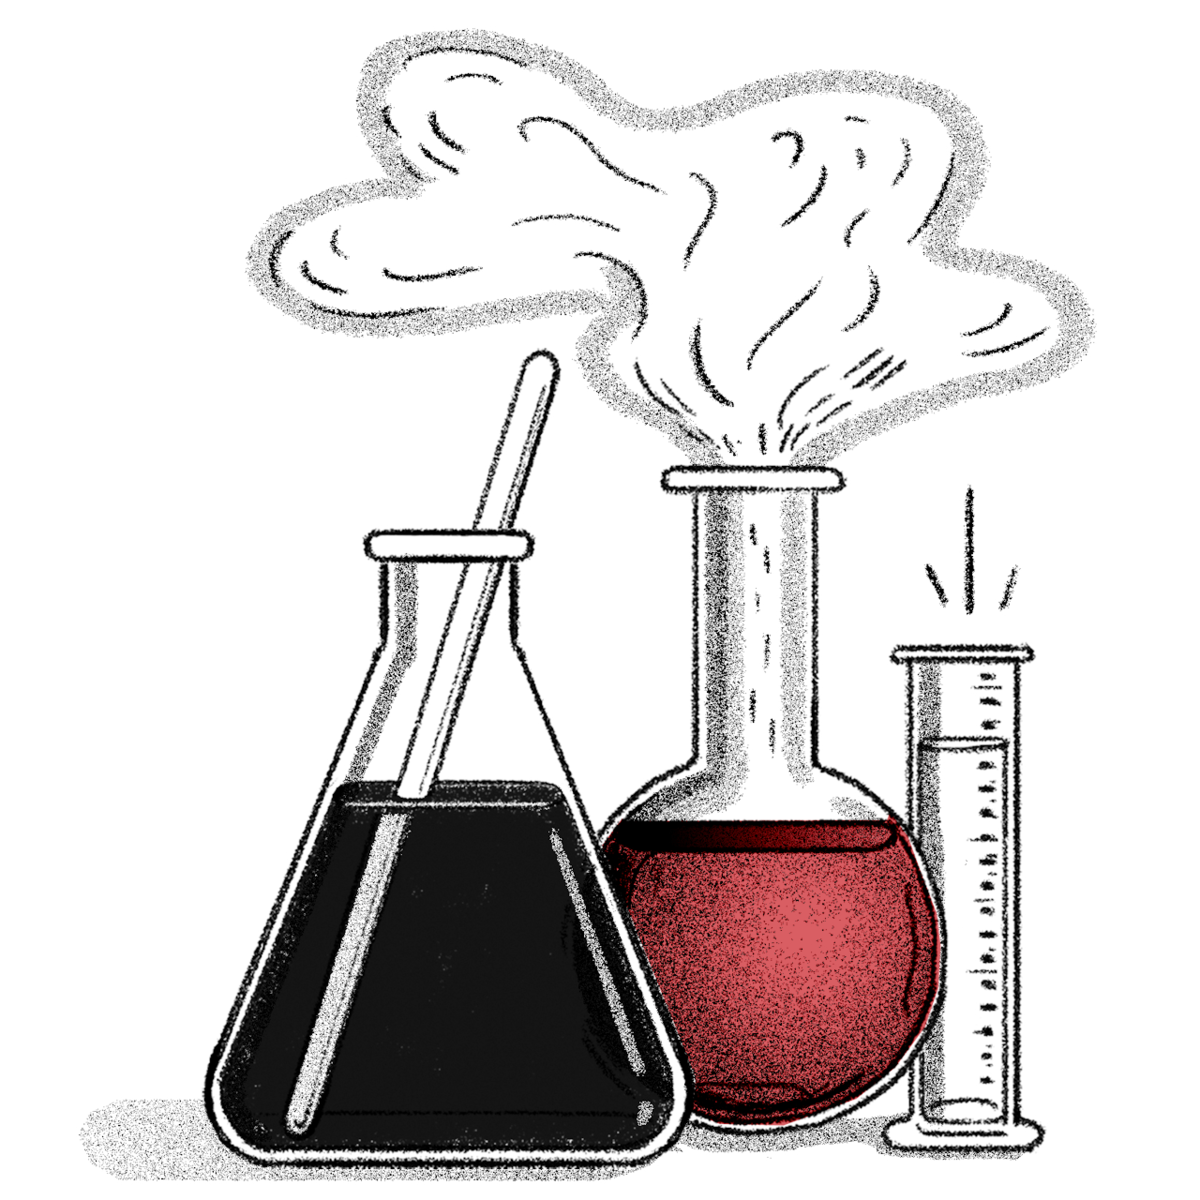 Летучее химическое вещество. Химические рисунки. Химия иллюстрации. Химические рисуночки. Рисунки по химии для оформления.